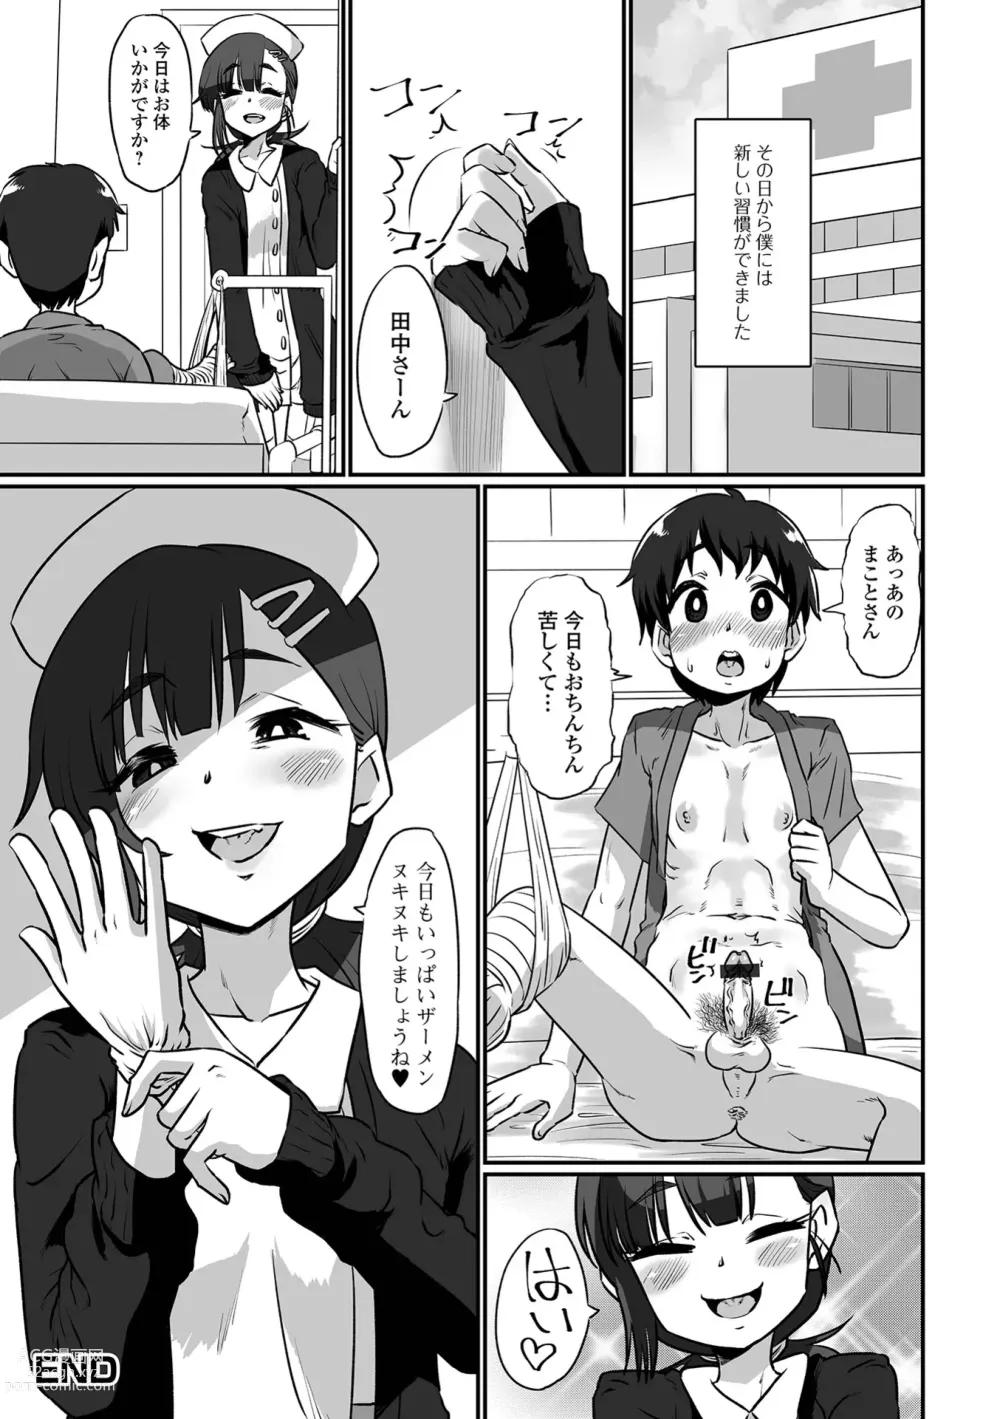 Page 98 of manga Kawaii Otokonoko wa Suki Desuka?